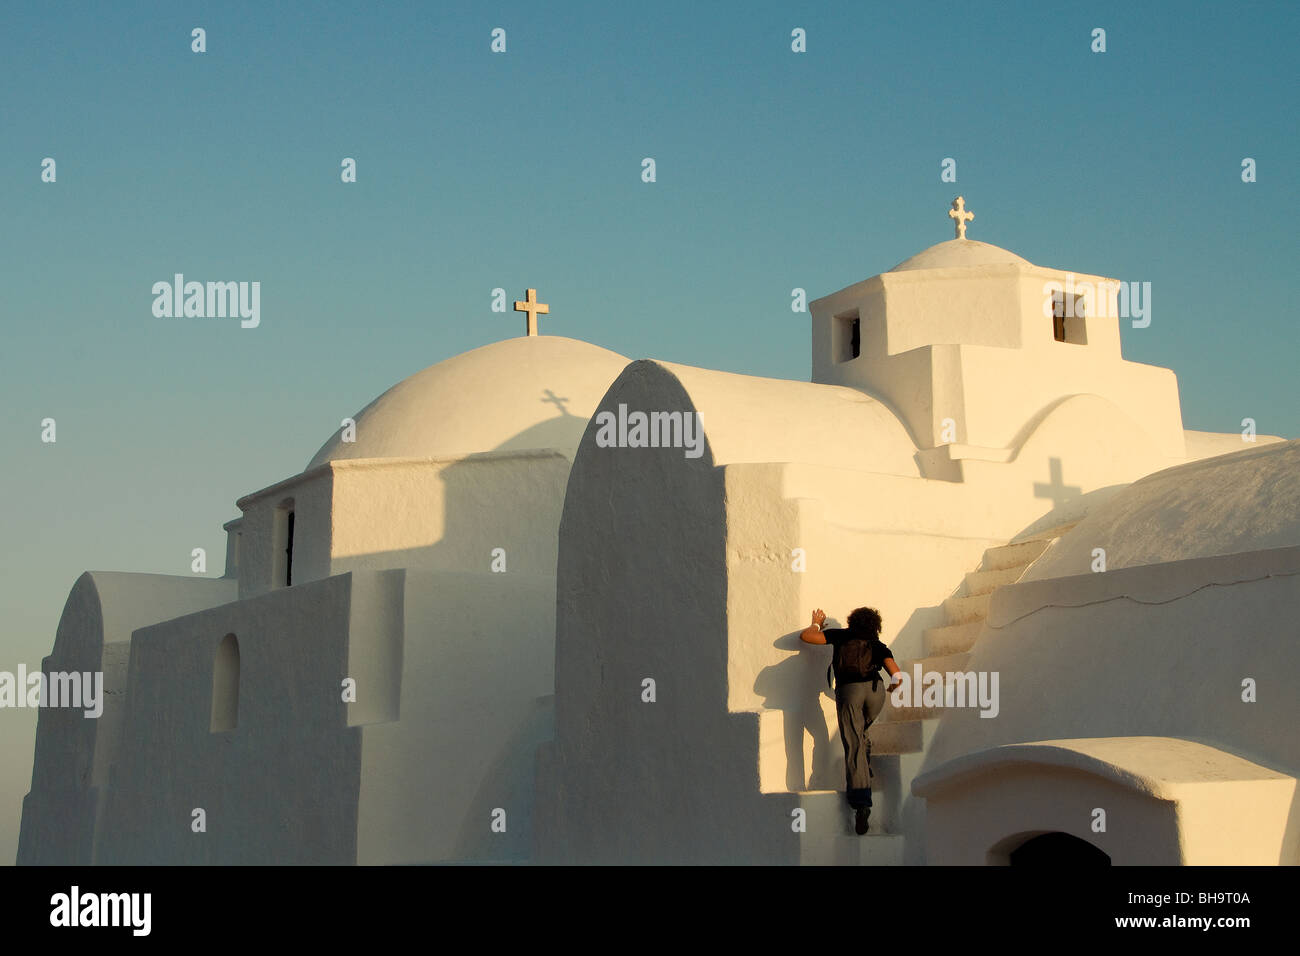 Das ist die Kirche der Jungfrau Maria auf Folegandros Insel. Folegandros ist eine griechische Kykladen Insel im Ägäischen Meer. Stockfoto